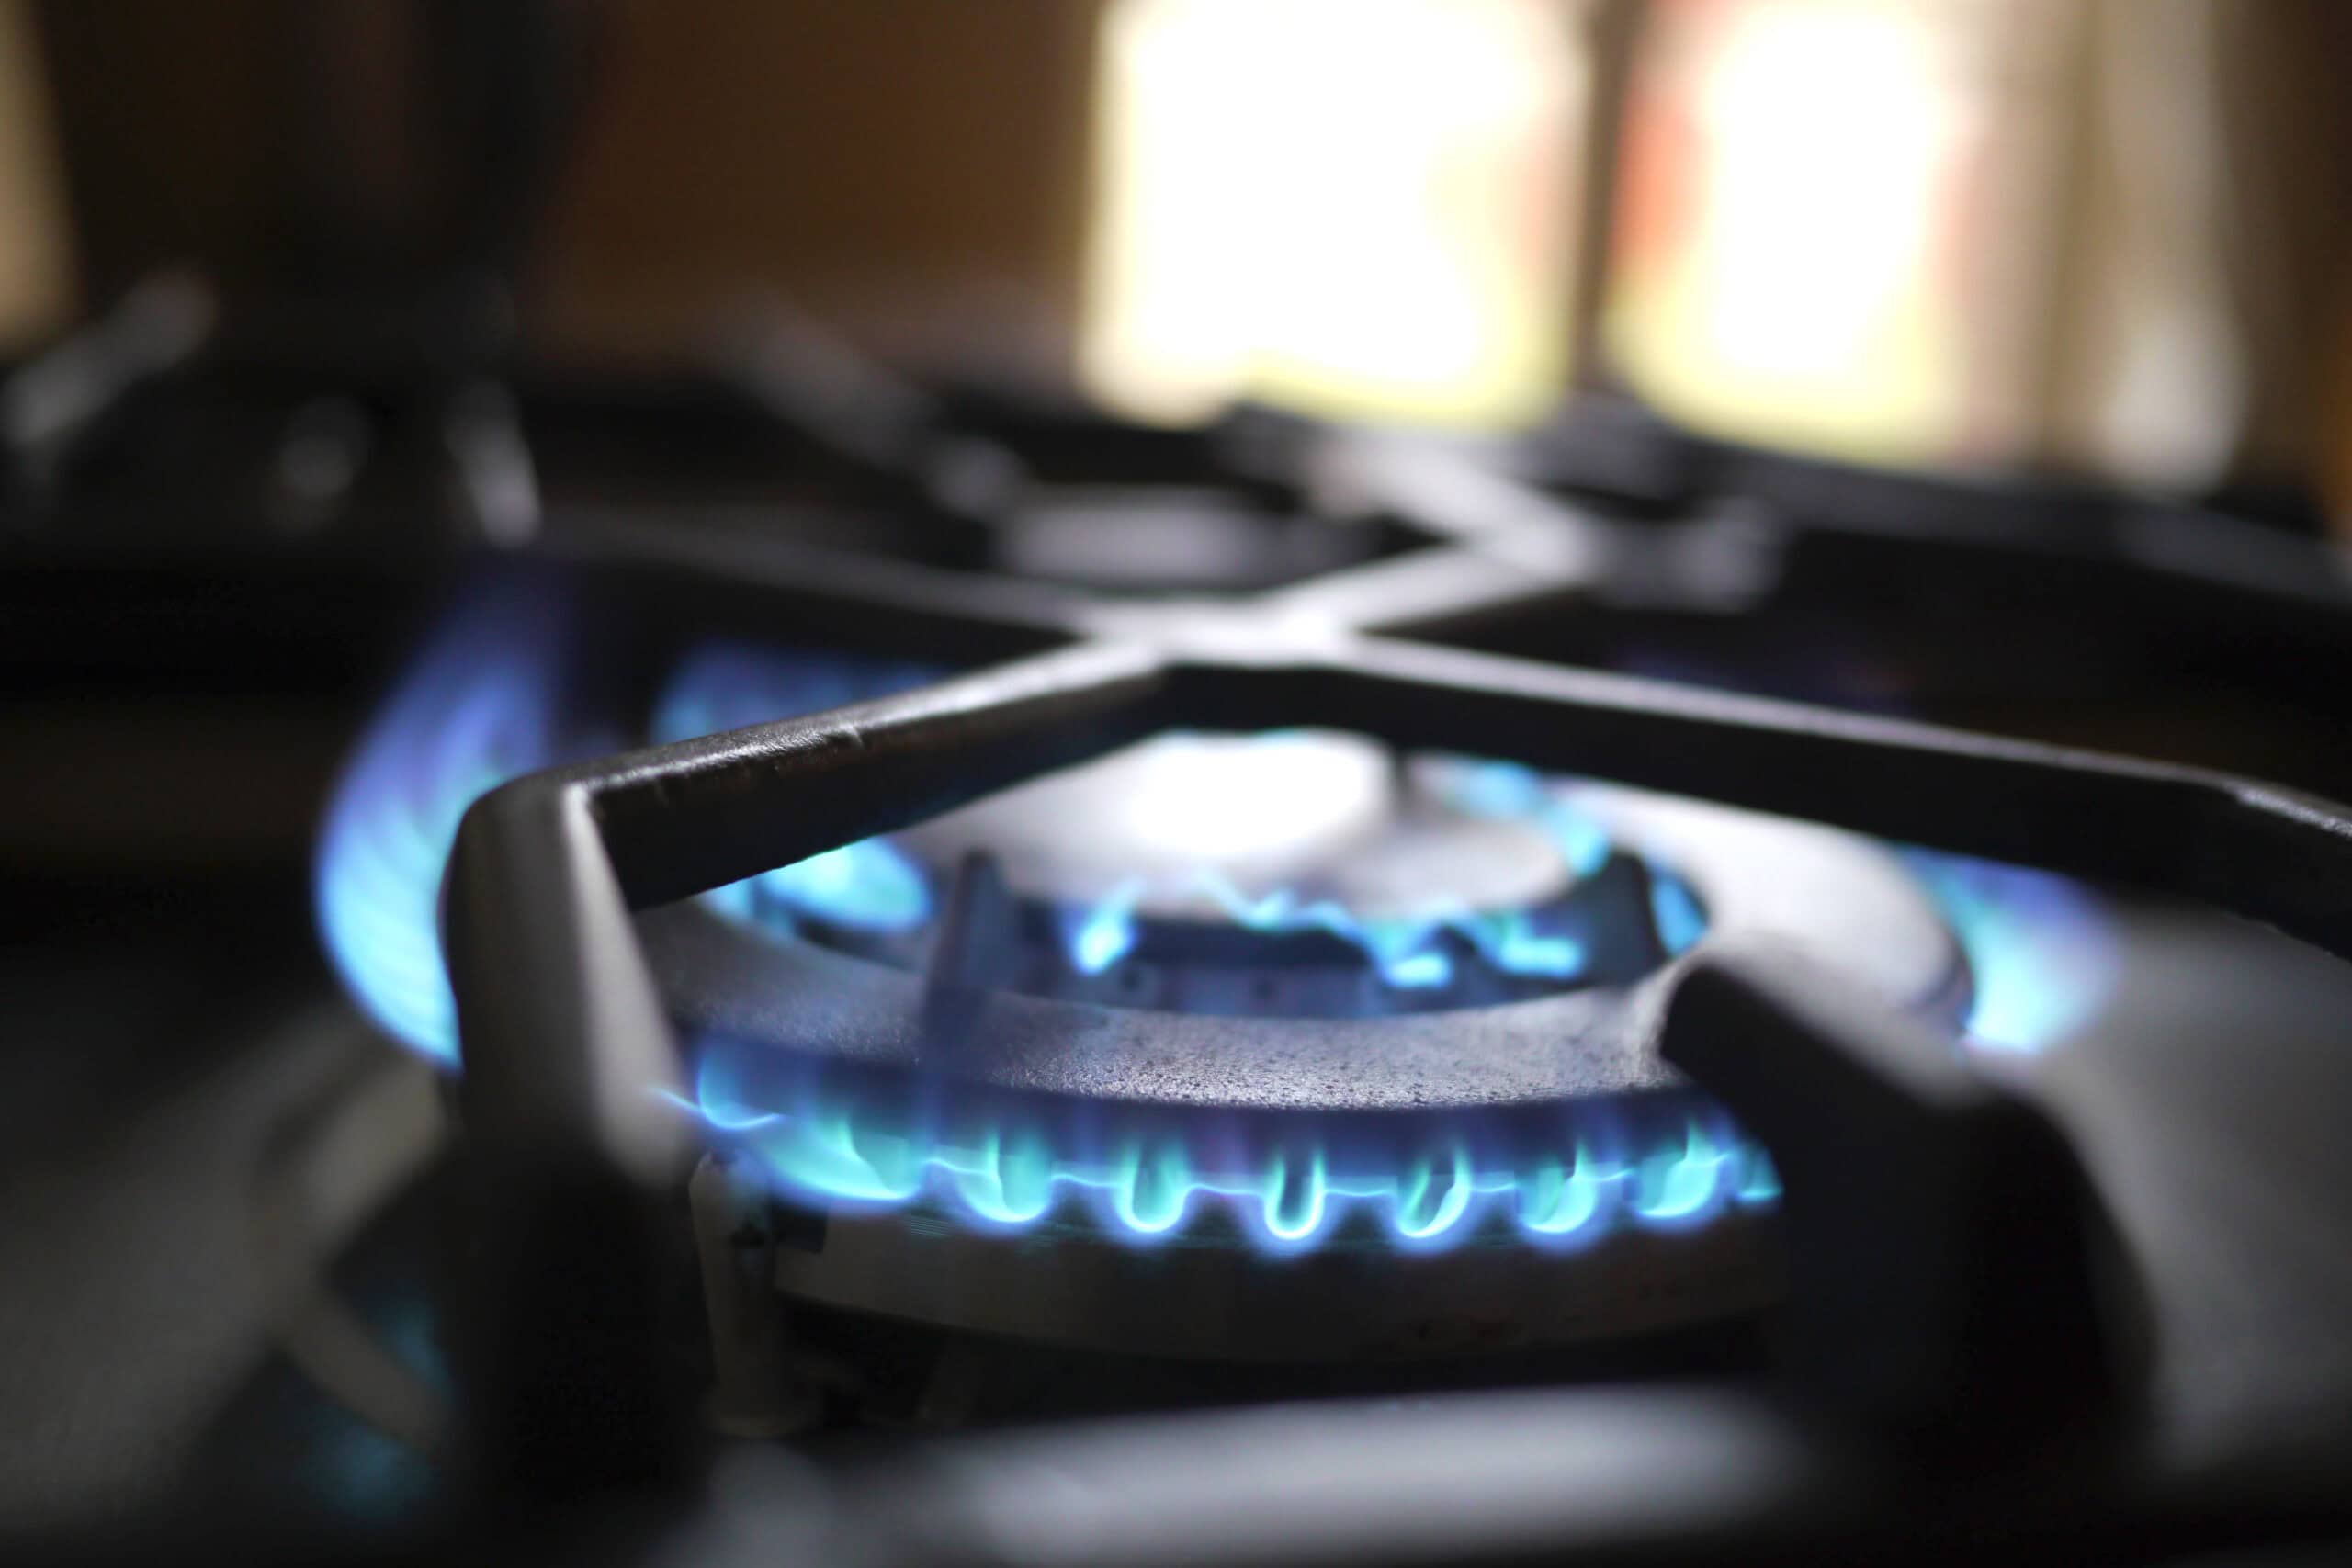 Cómo evitar fugas de gas LP en casa cómo evitar fugas de gas lp en casa - close up fire stove scaled - Cómo evitar fugas de gas LP en casa